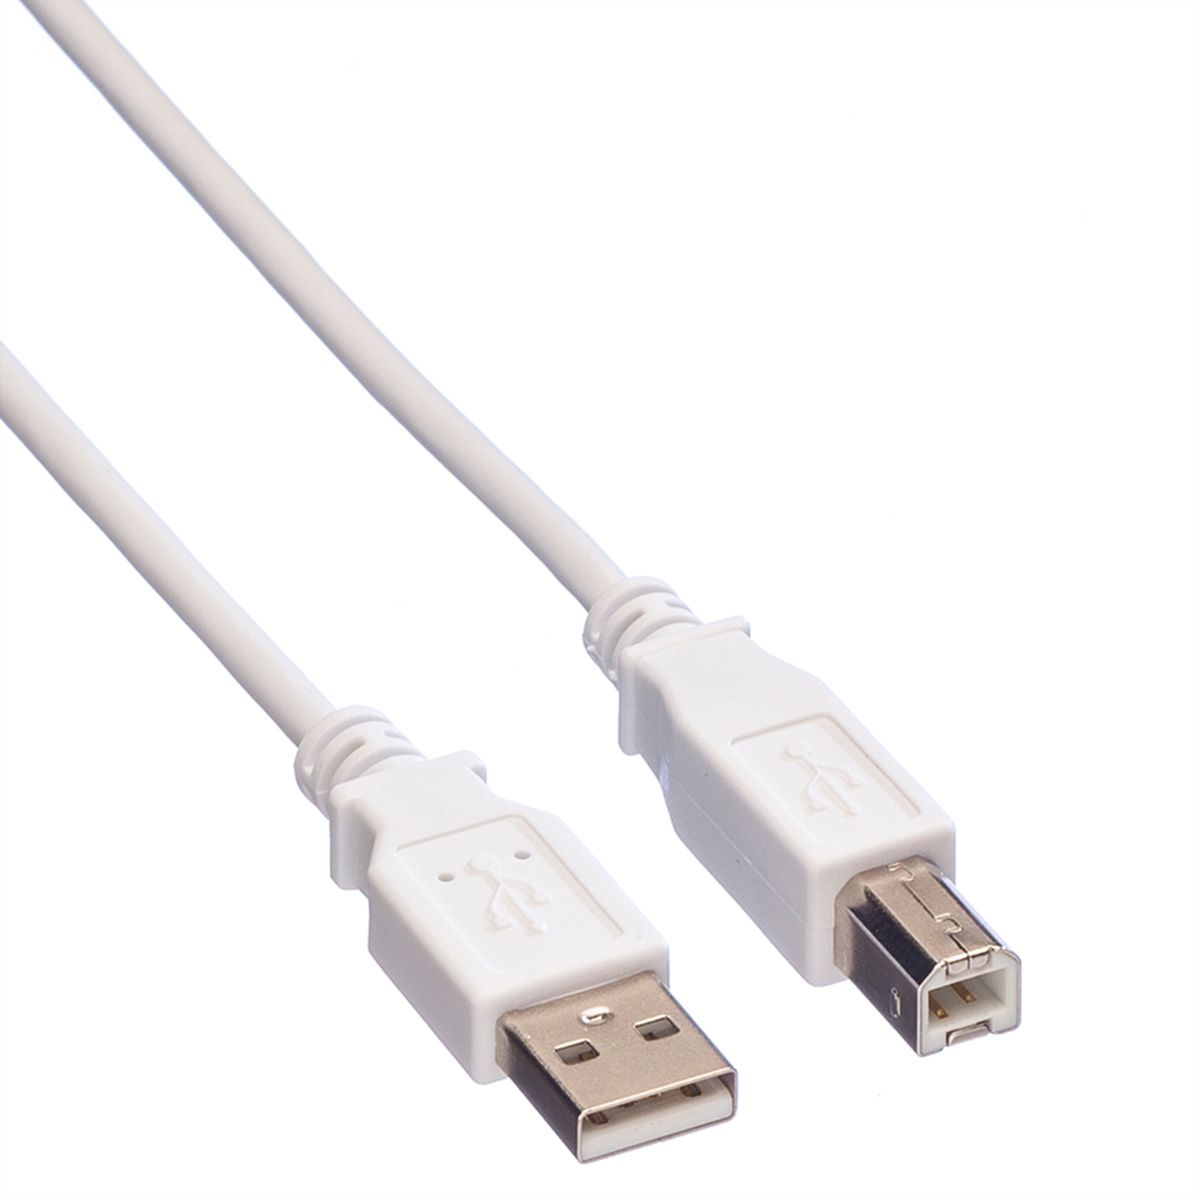 Value 3m 11.99.5501 KVM USB Cable